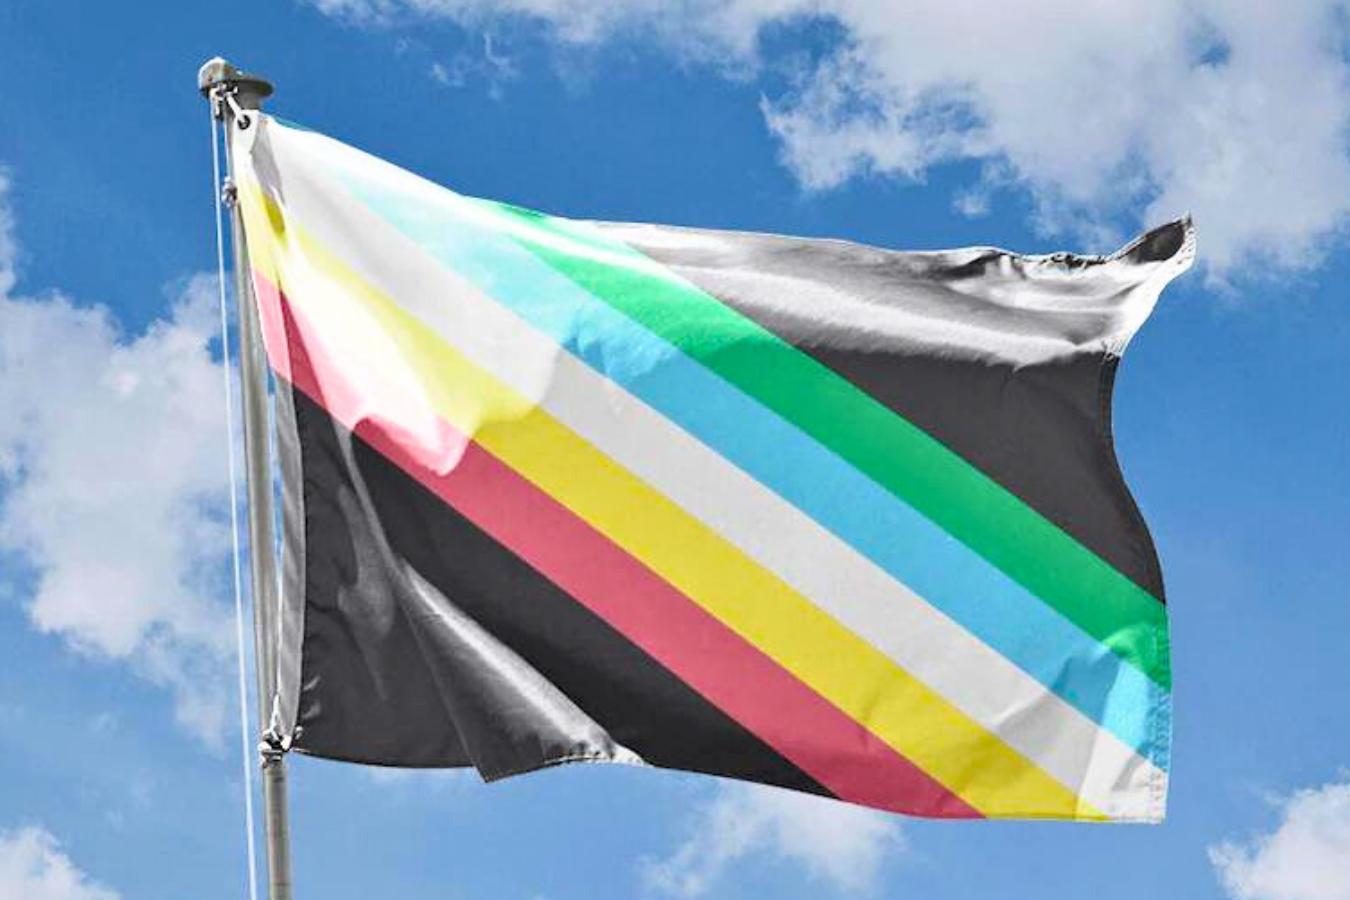 Frente a un cielo azul nublado aparece una bandera con franjas diagonales, rojas, amarillas, blancas, azules y verdes sobre un fondo negro carbón.